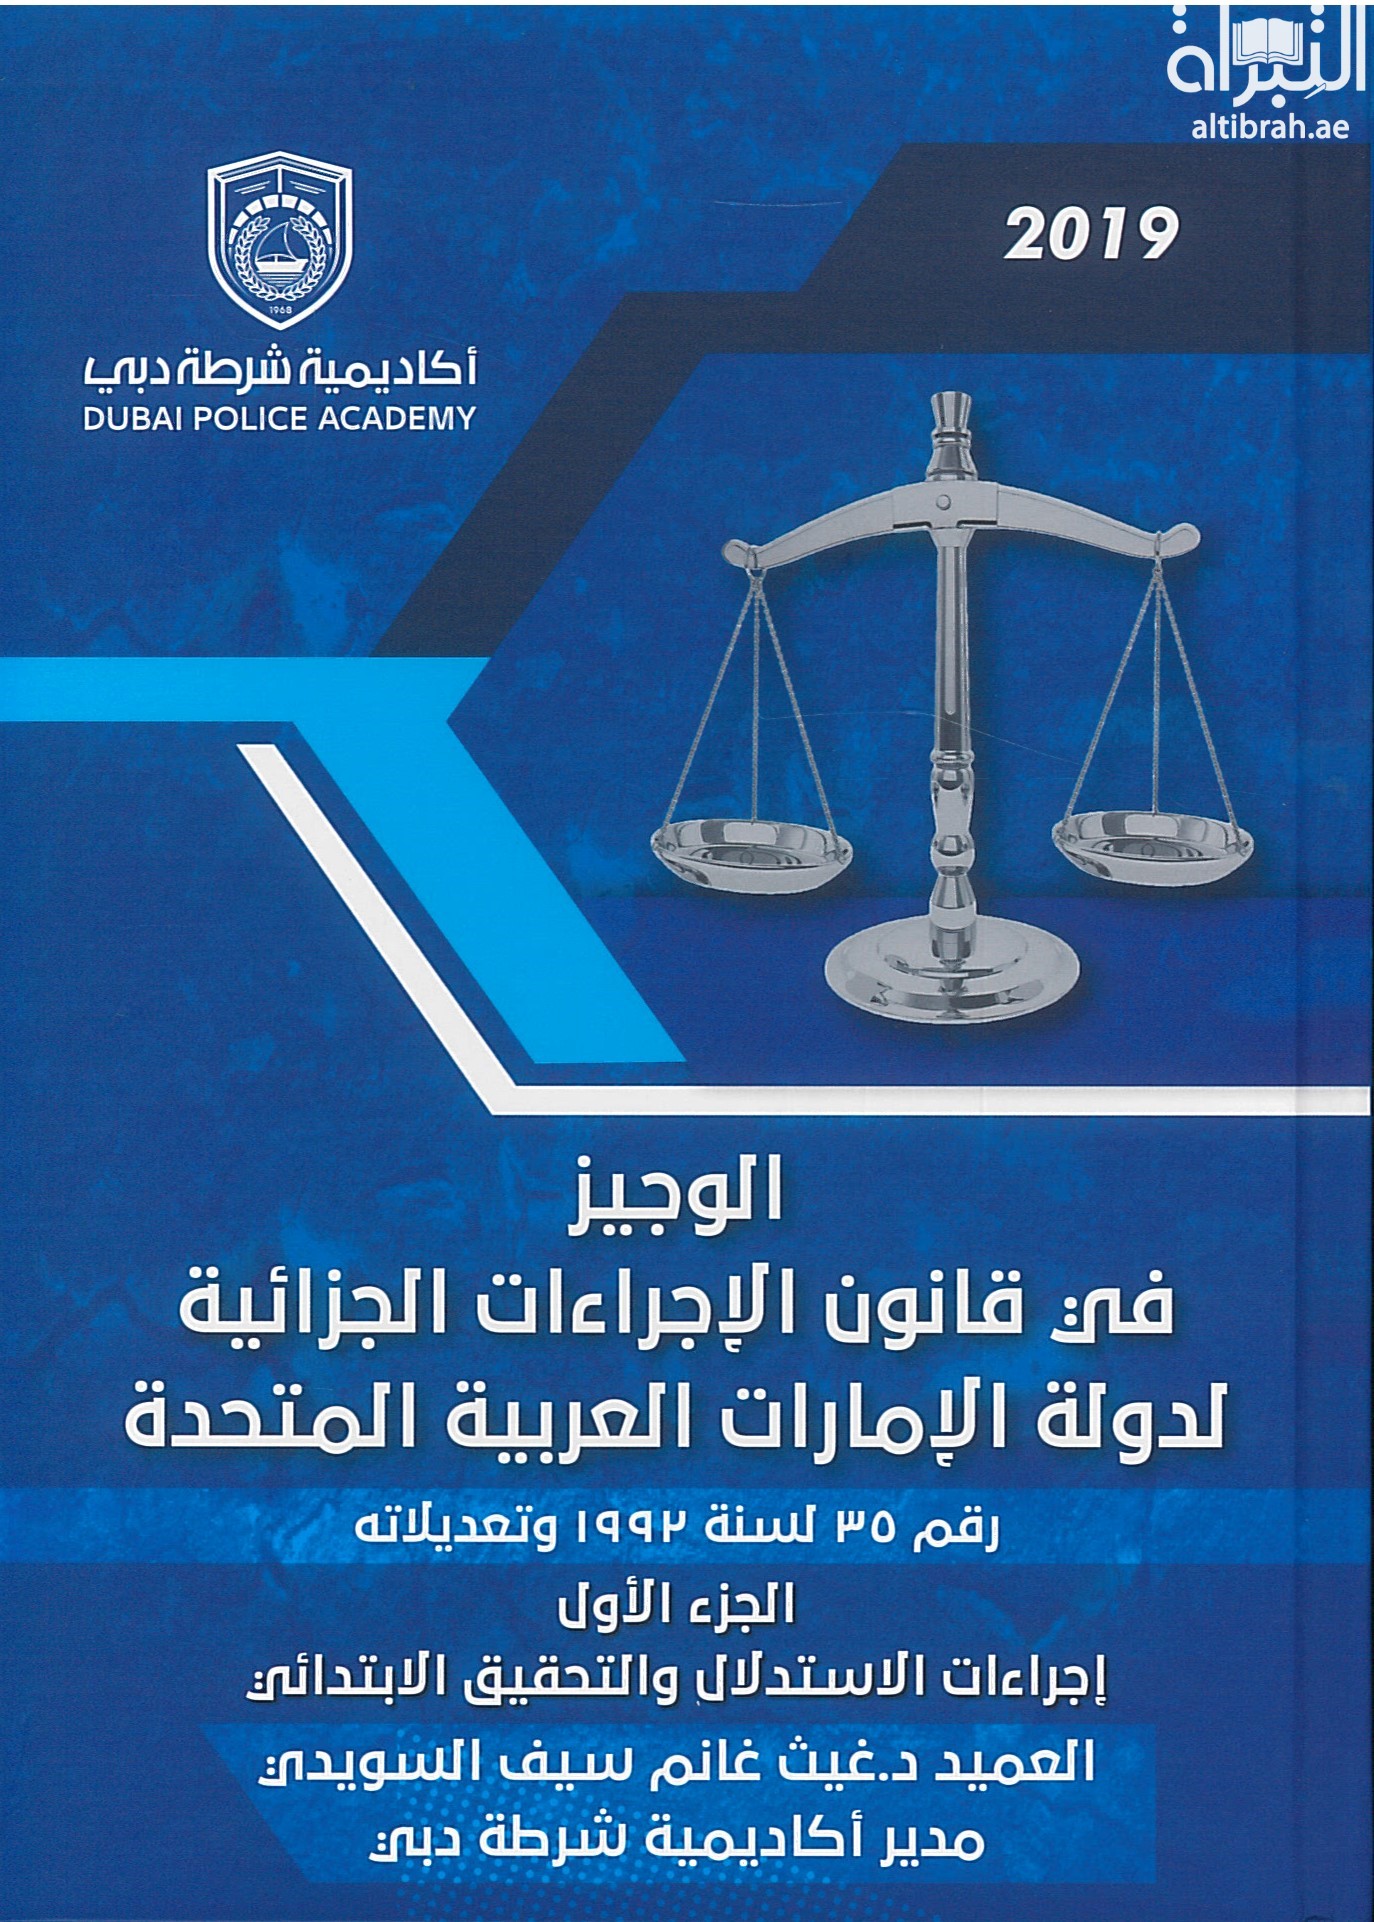 الوجيز في قانون الإجراءات الجزائية لدولة الإمارات العربية المتحدة رقم 35 لسنة 1992م وتعديلاته